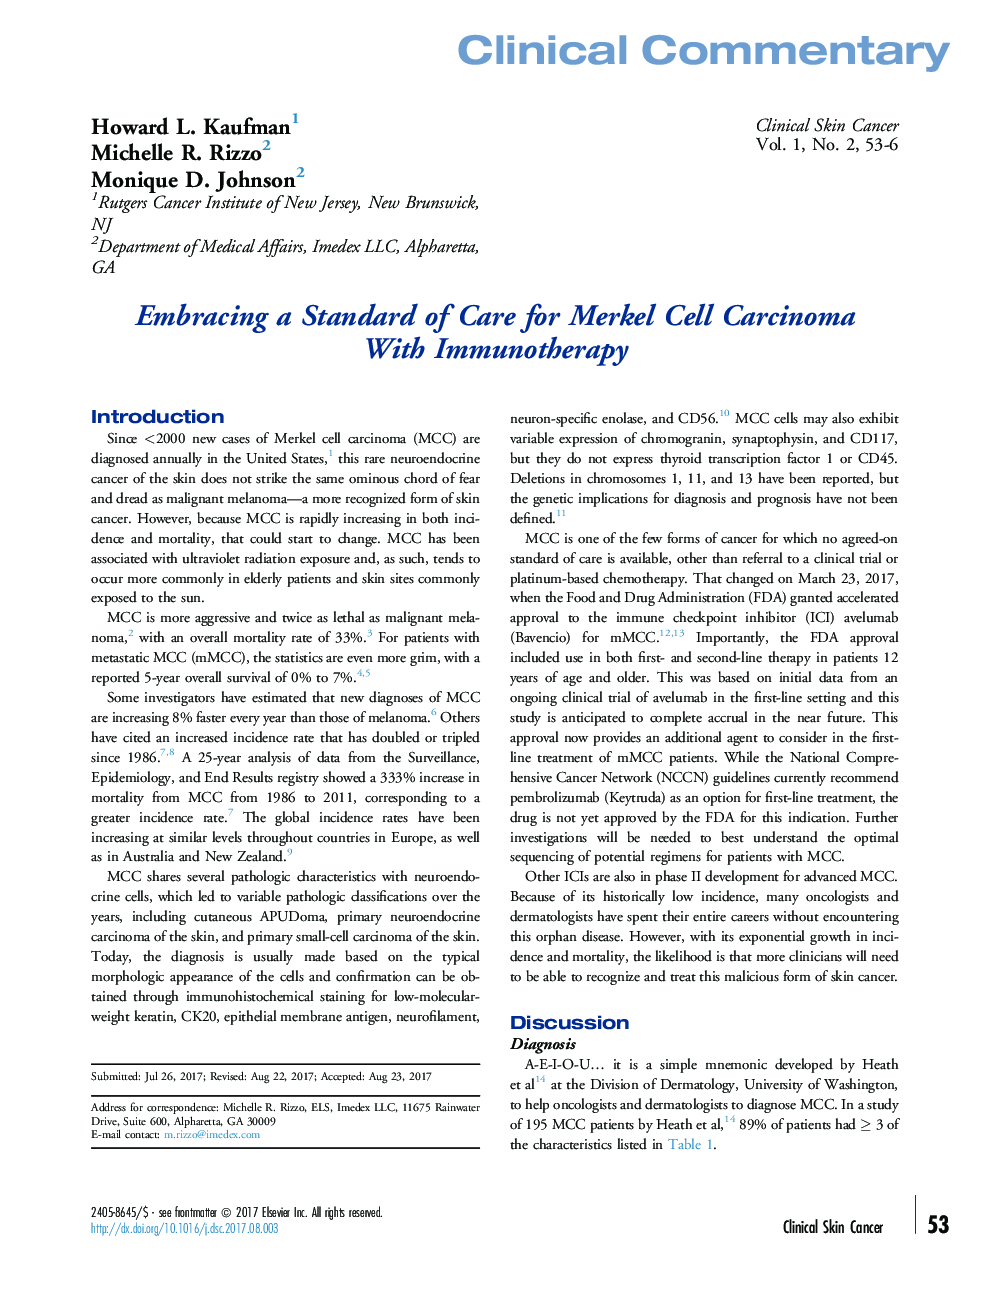 پیشگیری از استاندارد مراقبت برای کارسینوم سلول مرکل با استفاده از ایمونوتراپی 